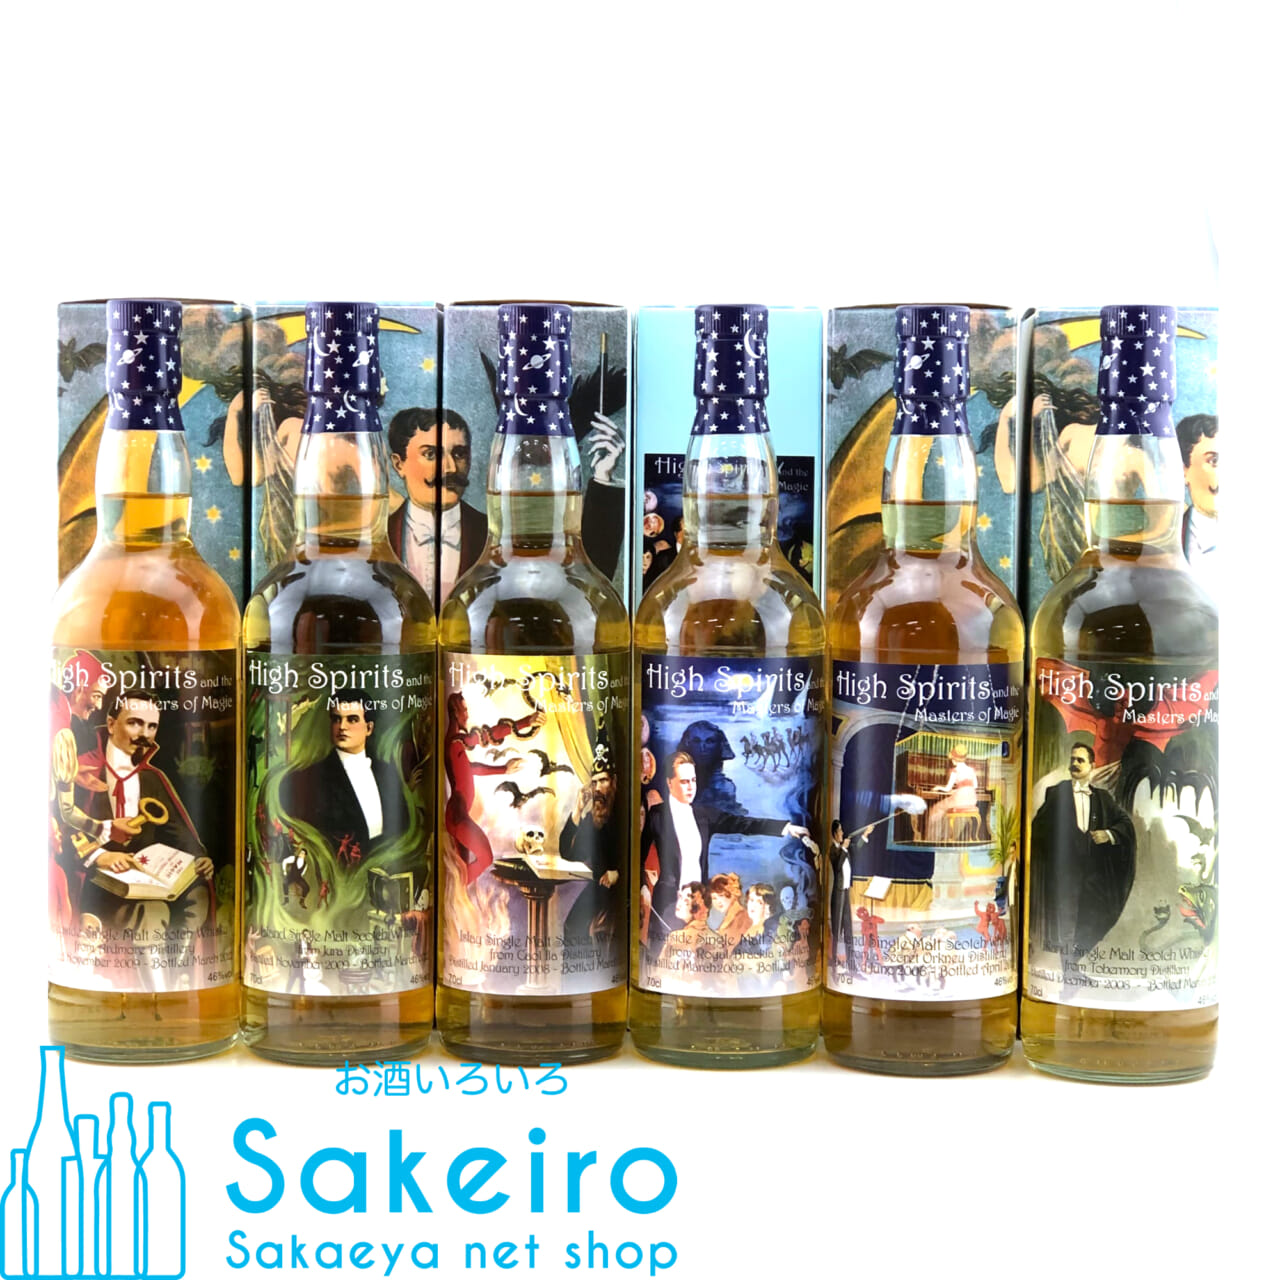 シークレットオークニー 2006 15年 46% 700ml ハイスピリッツ マスターズ オブ マジック シリーズ お酒いろいろ Sakeiro  -Sakaeya net shop-